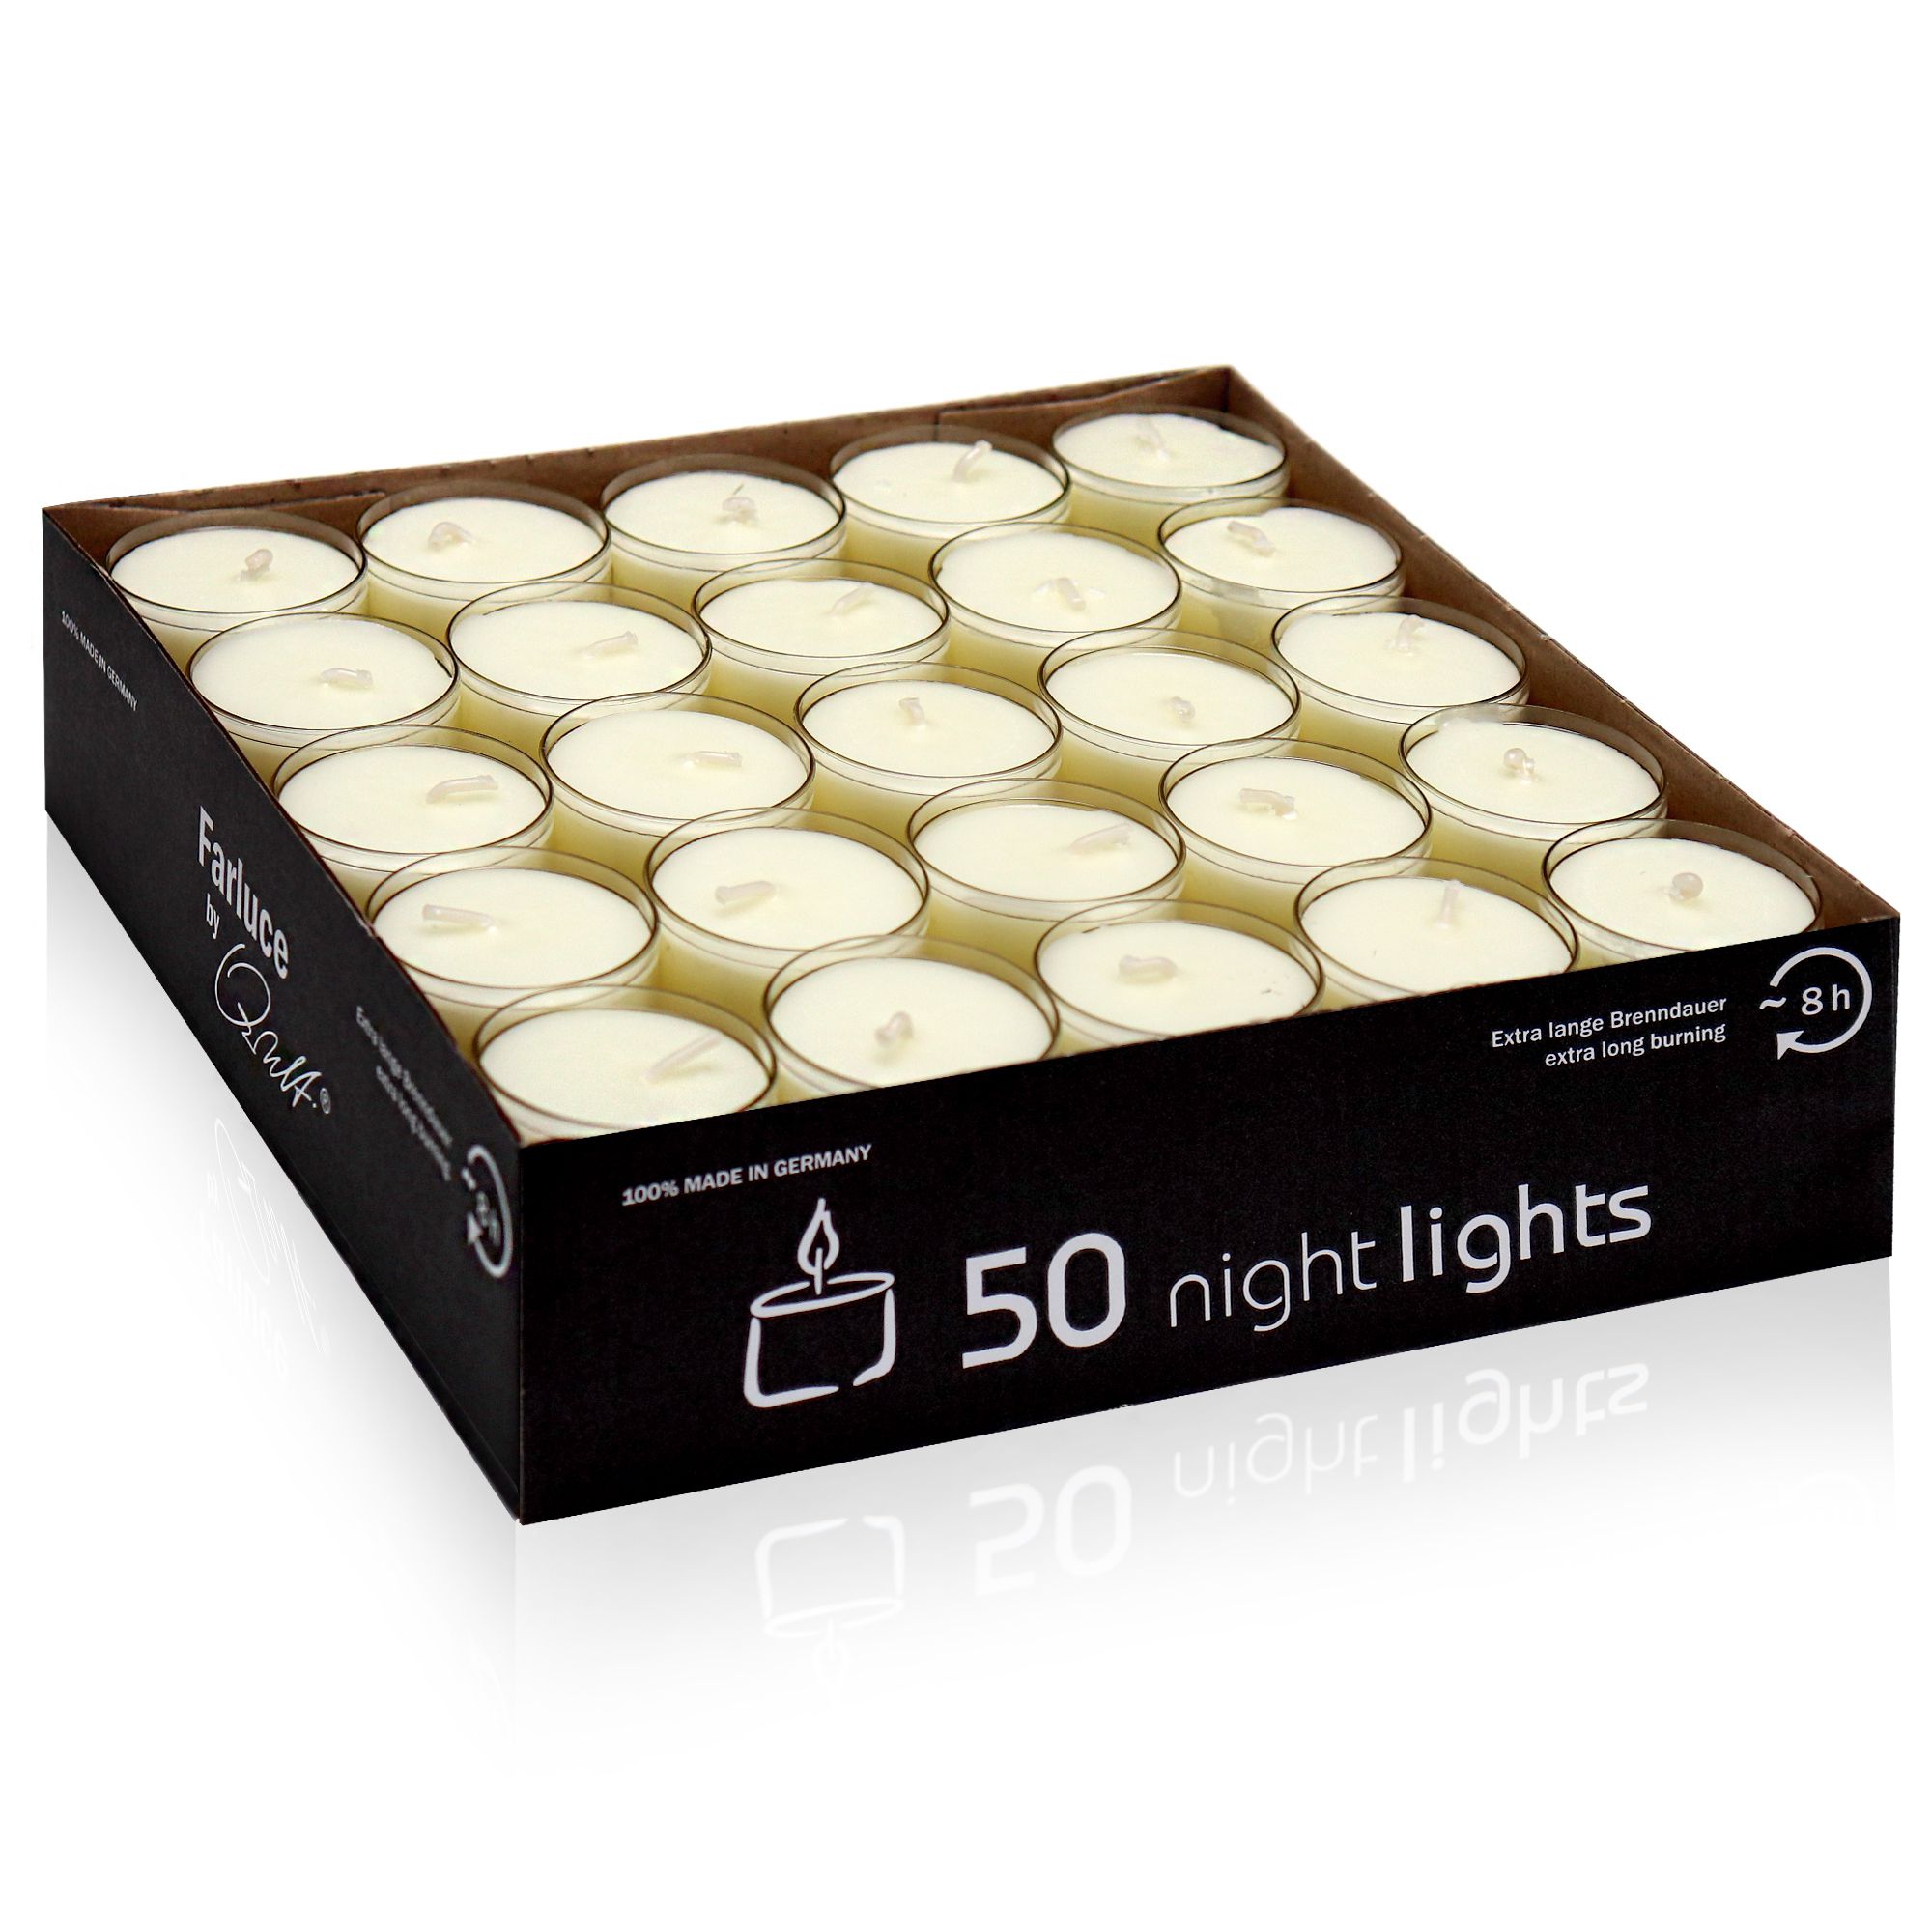 Qult Farluce Nightlights - 50 tealights nature - Ø 38 x 25 mm